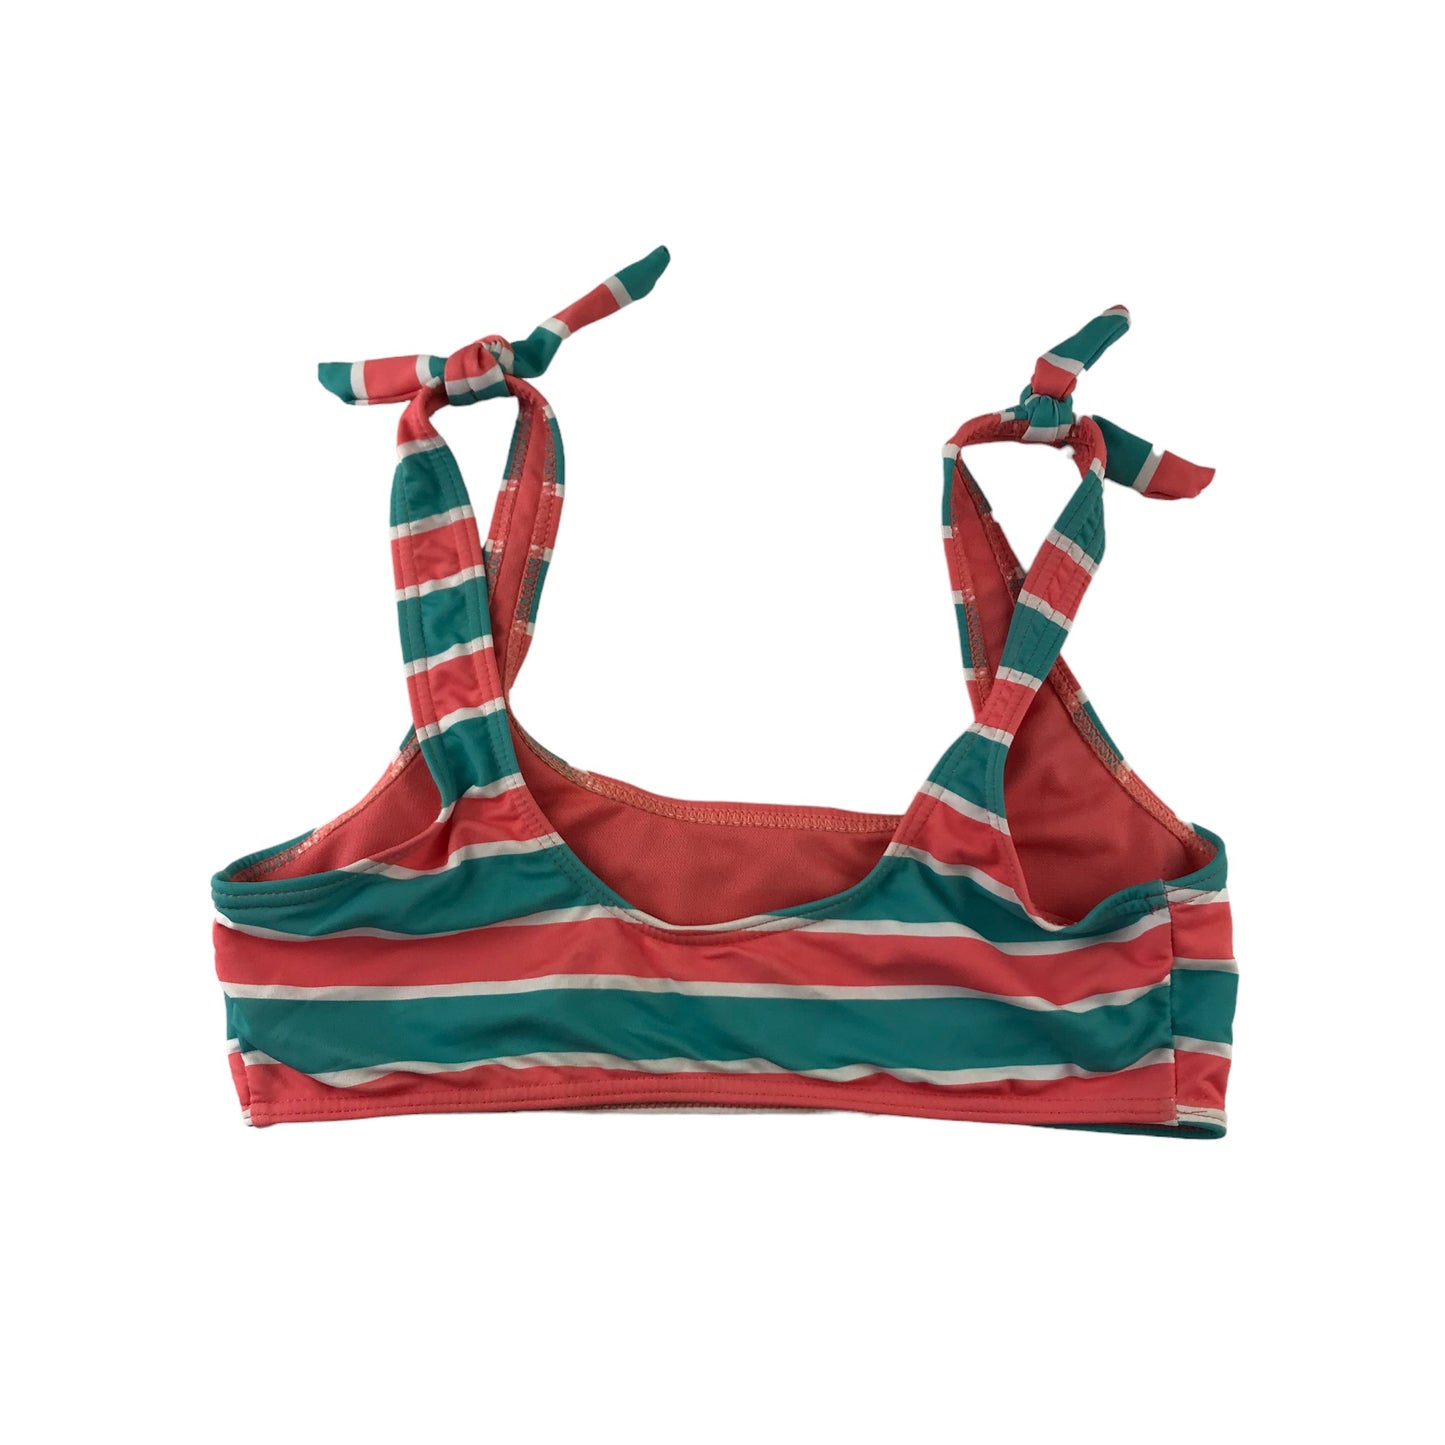 Primark Bikini Size Women 10 Salmon Red and Turquoise Stripy 2-piece set